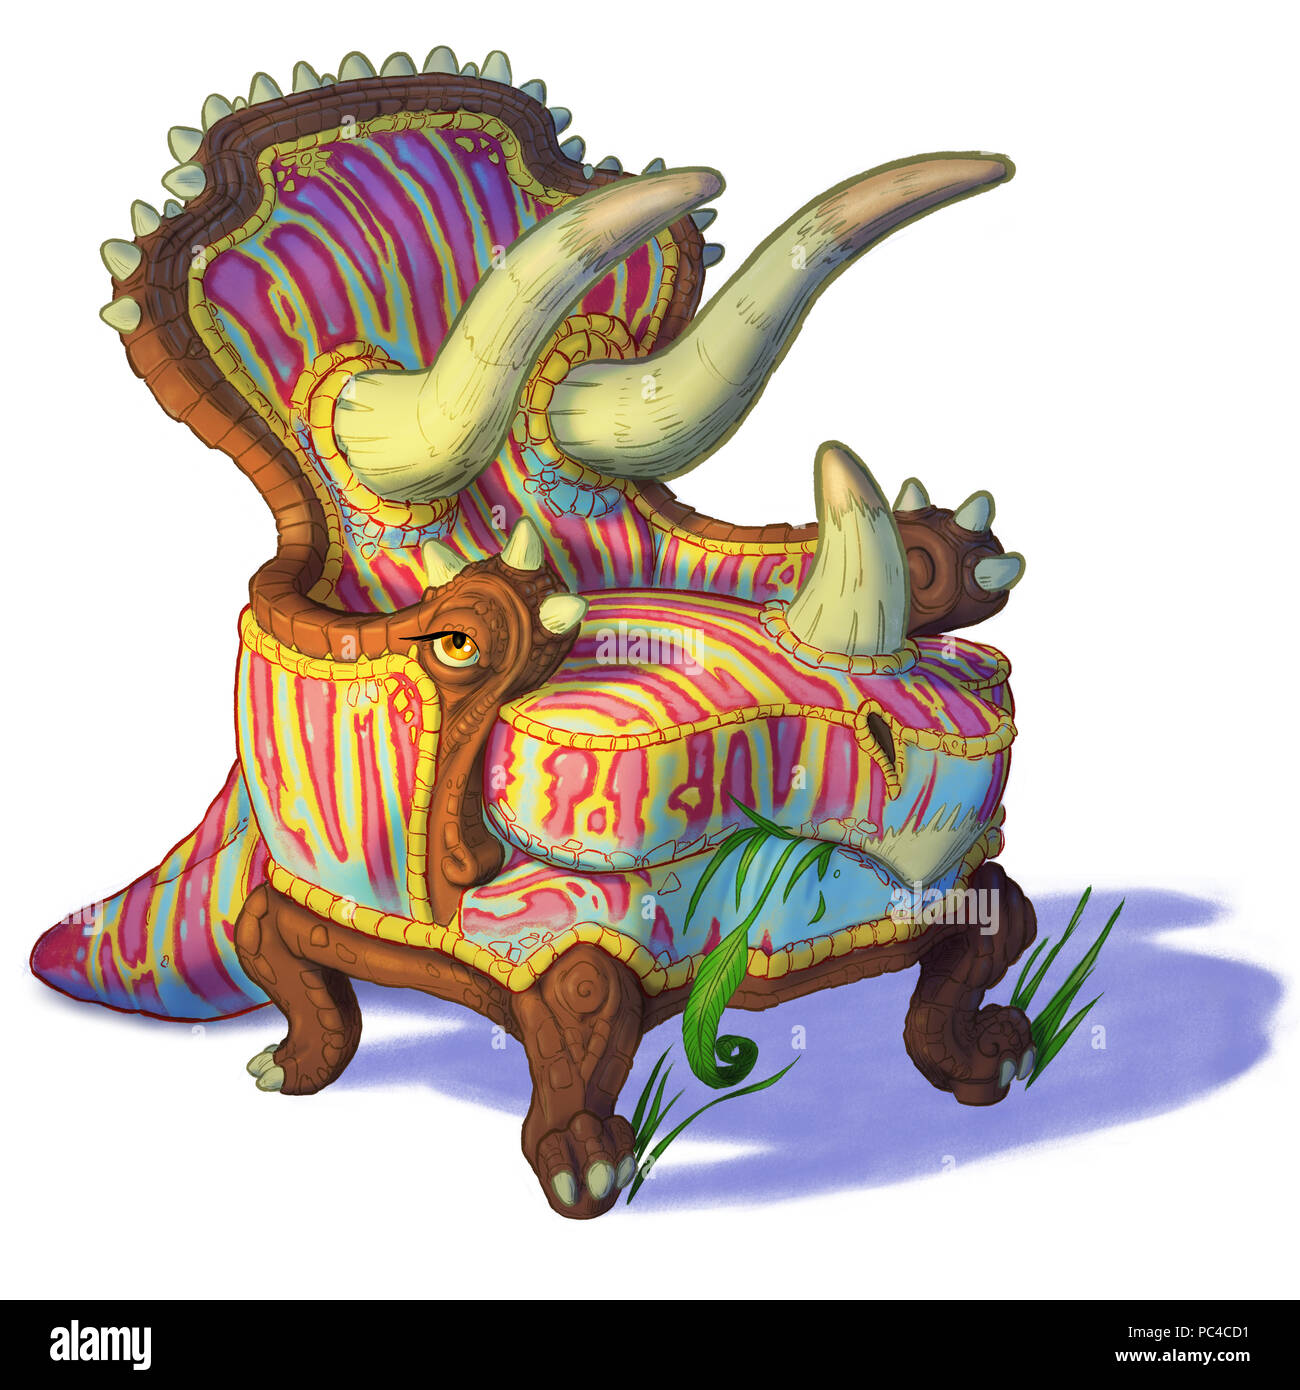 Cartoon clipart Illustration eines Triceratops Dinosaurier mit einem einfachen Stuhl oder Sessel kombiniert. Auch als Trichairatops bekannt. Stockfoto